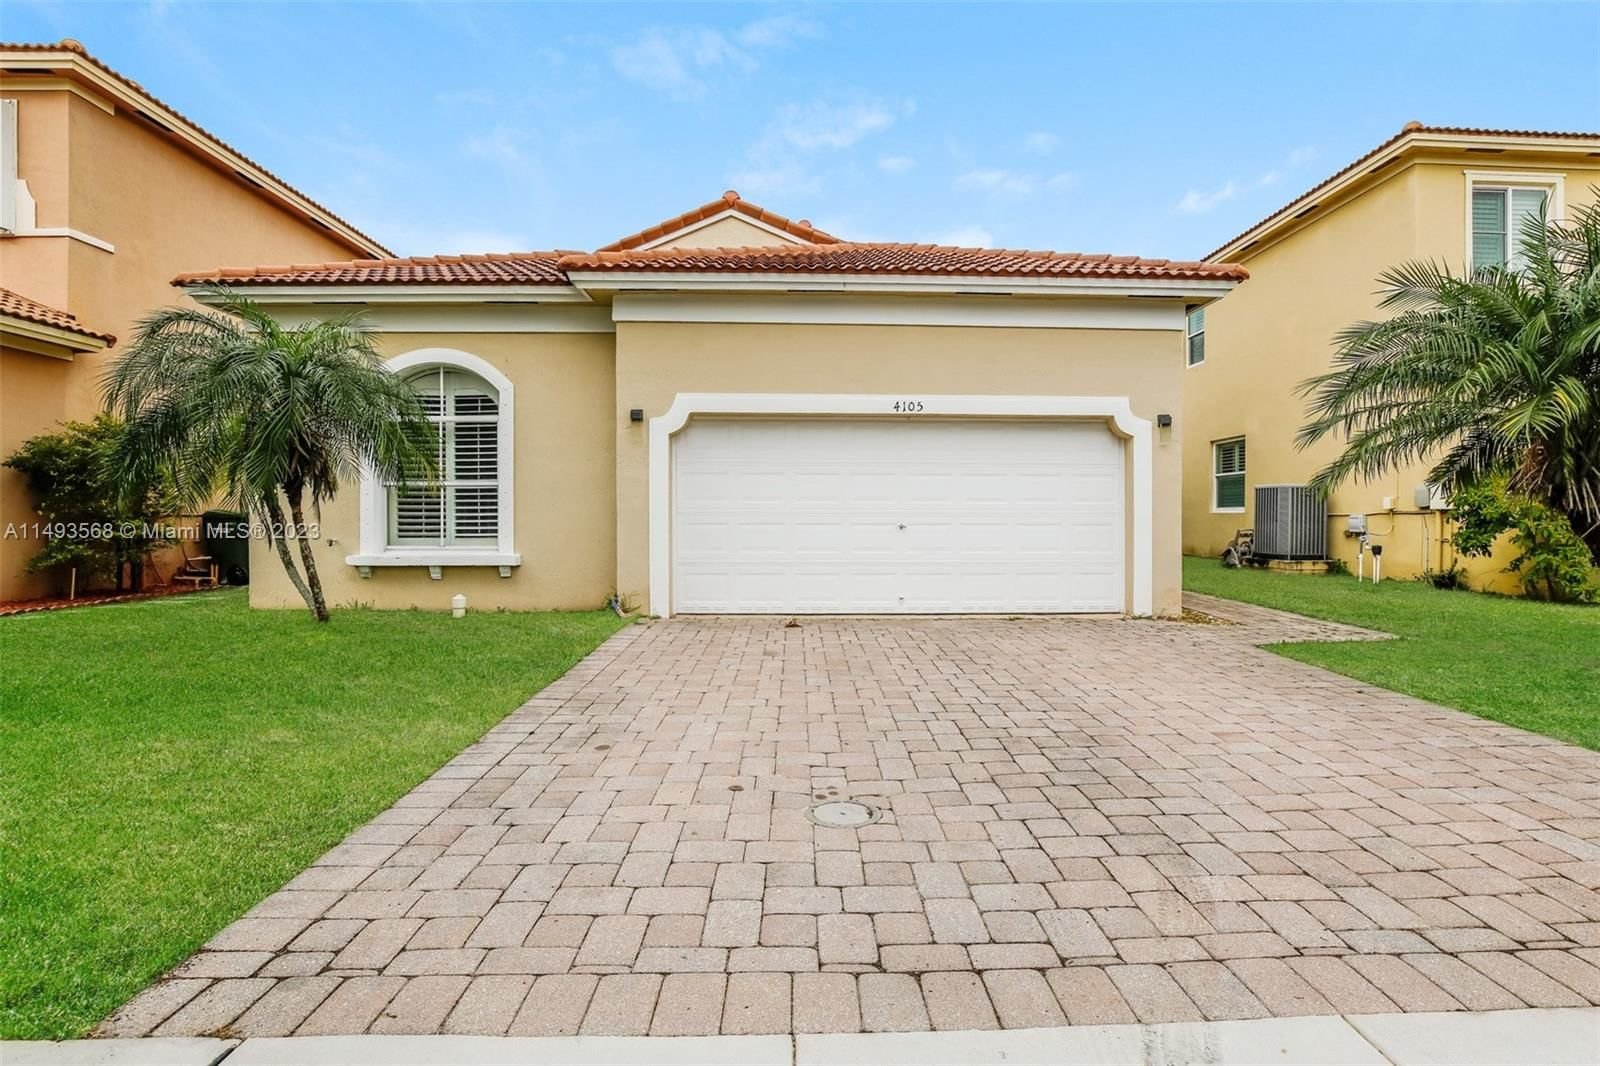 Real estate property located at 4105 22nd St, Miami-Dade County, PORTOFINO ESTATES, Homestead, FL